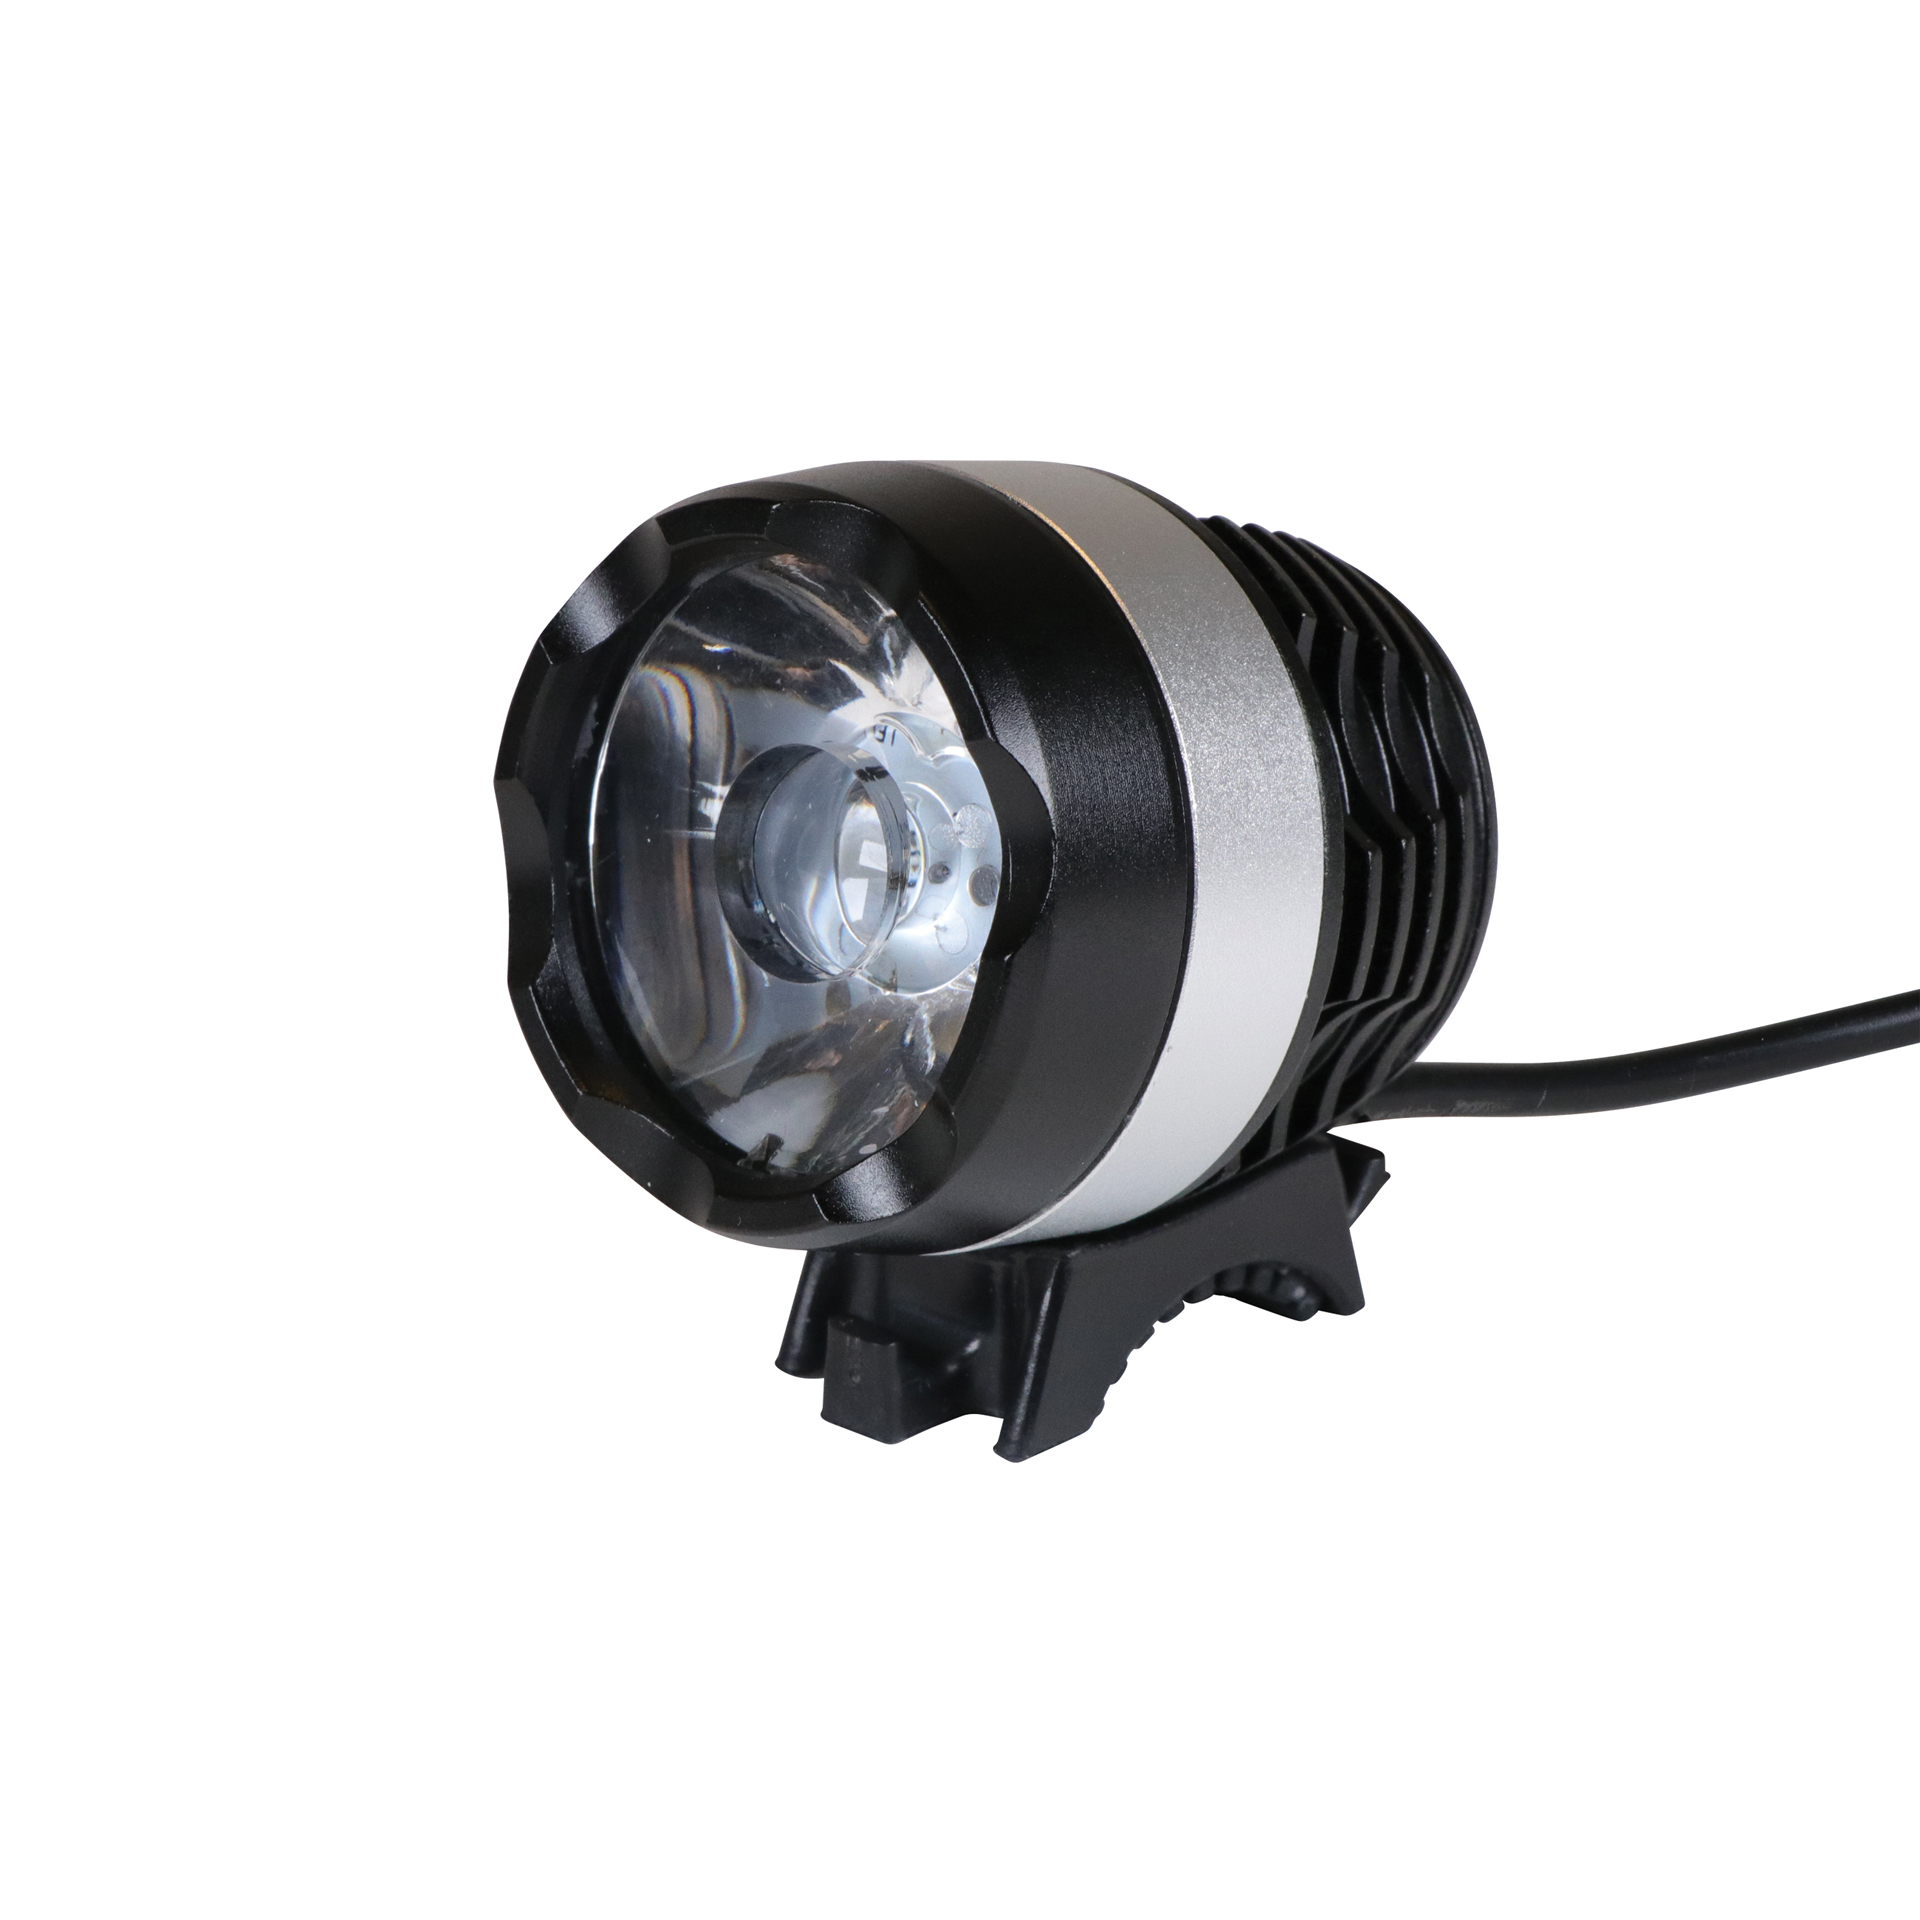 Dresco XP-G LED Koplamp met Accupack 500 Lumen (5251013)